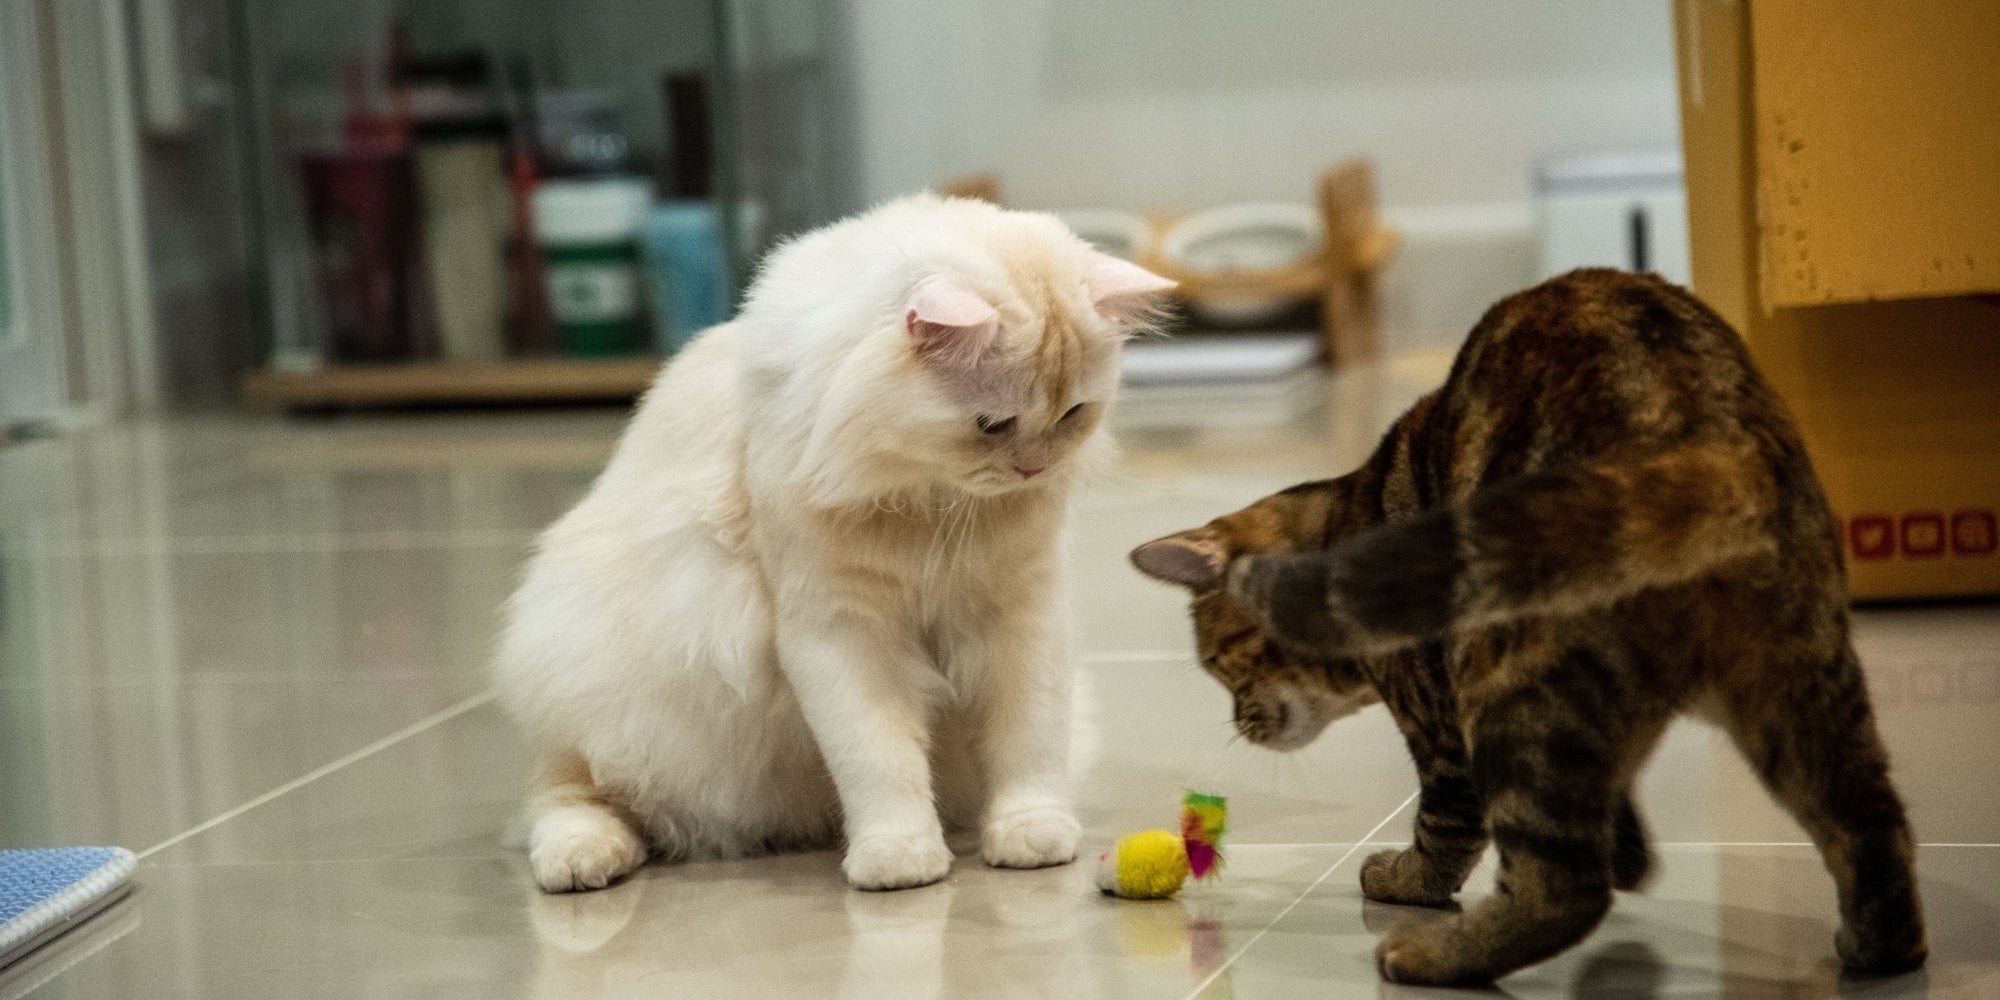 dos gato jugando juguete de gato en el suelo de baldosas